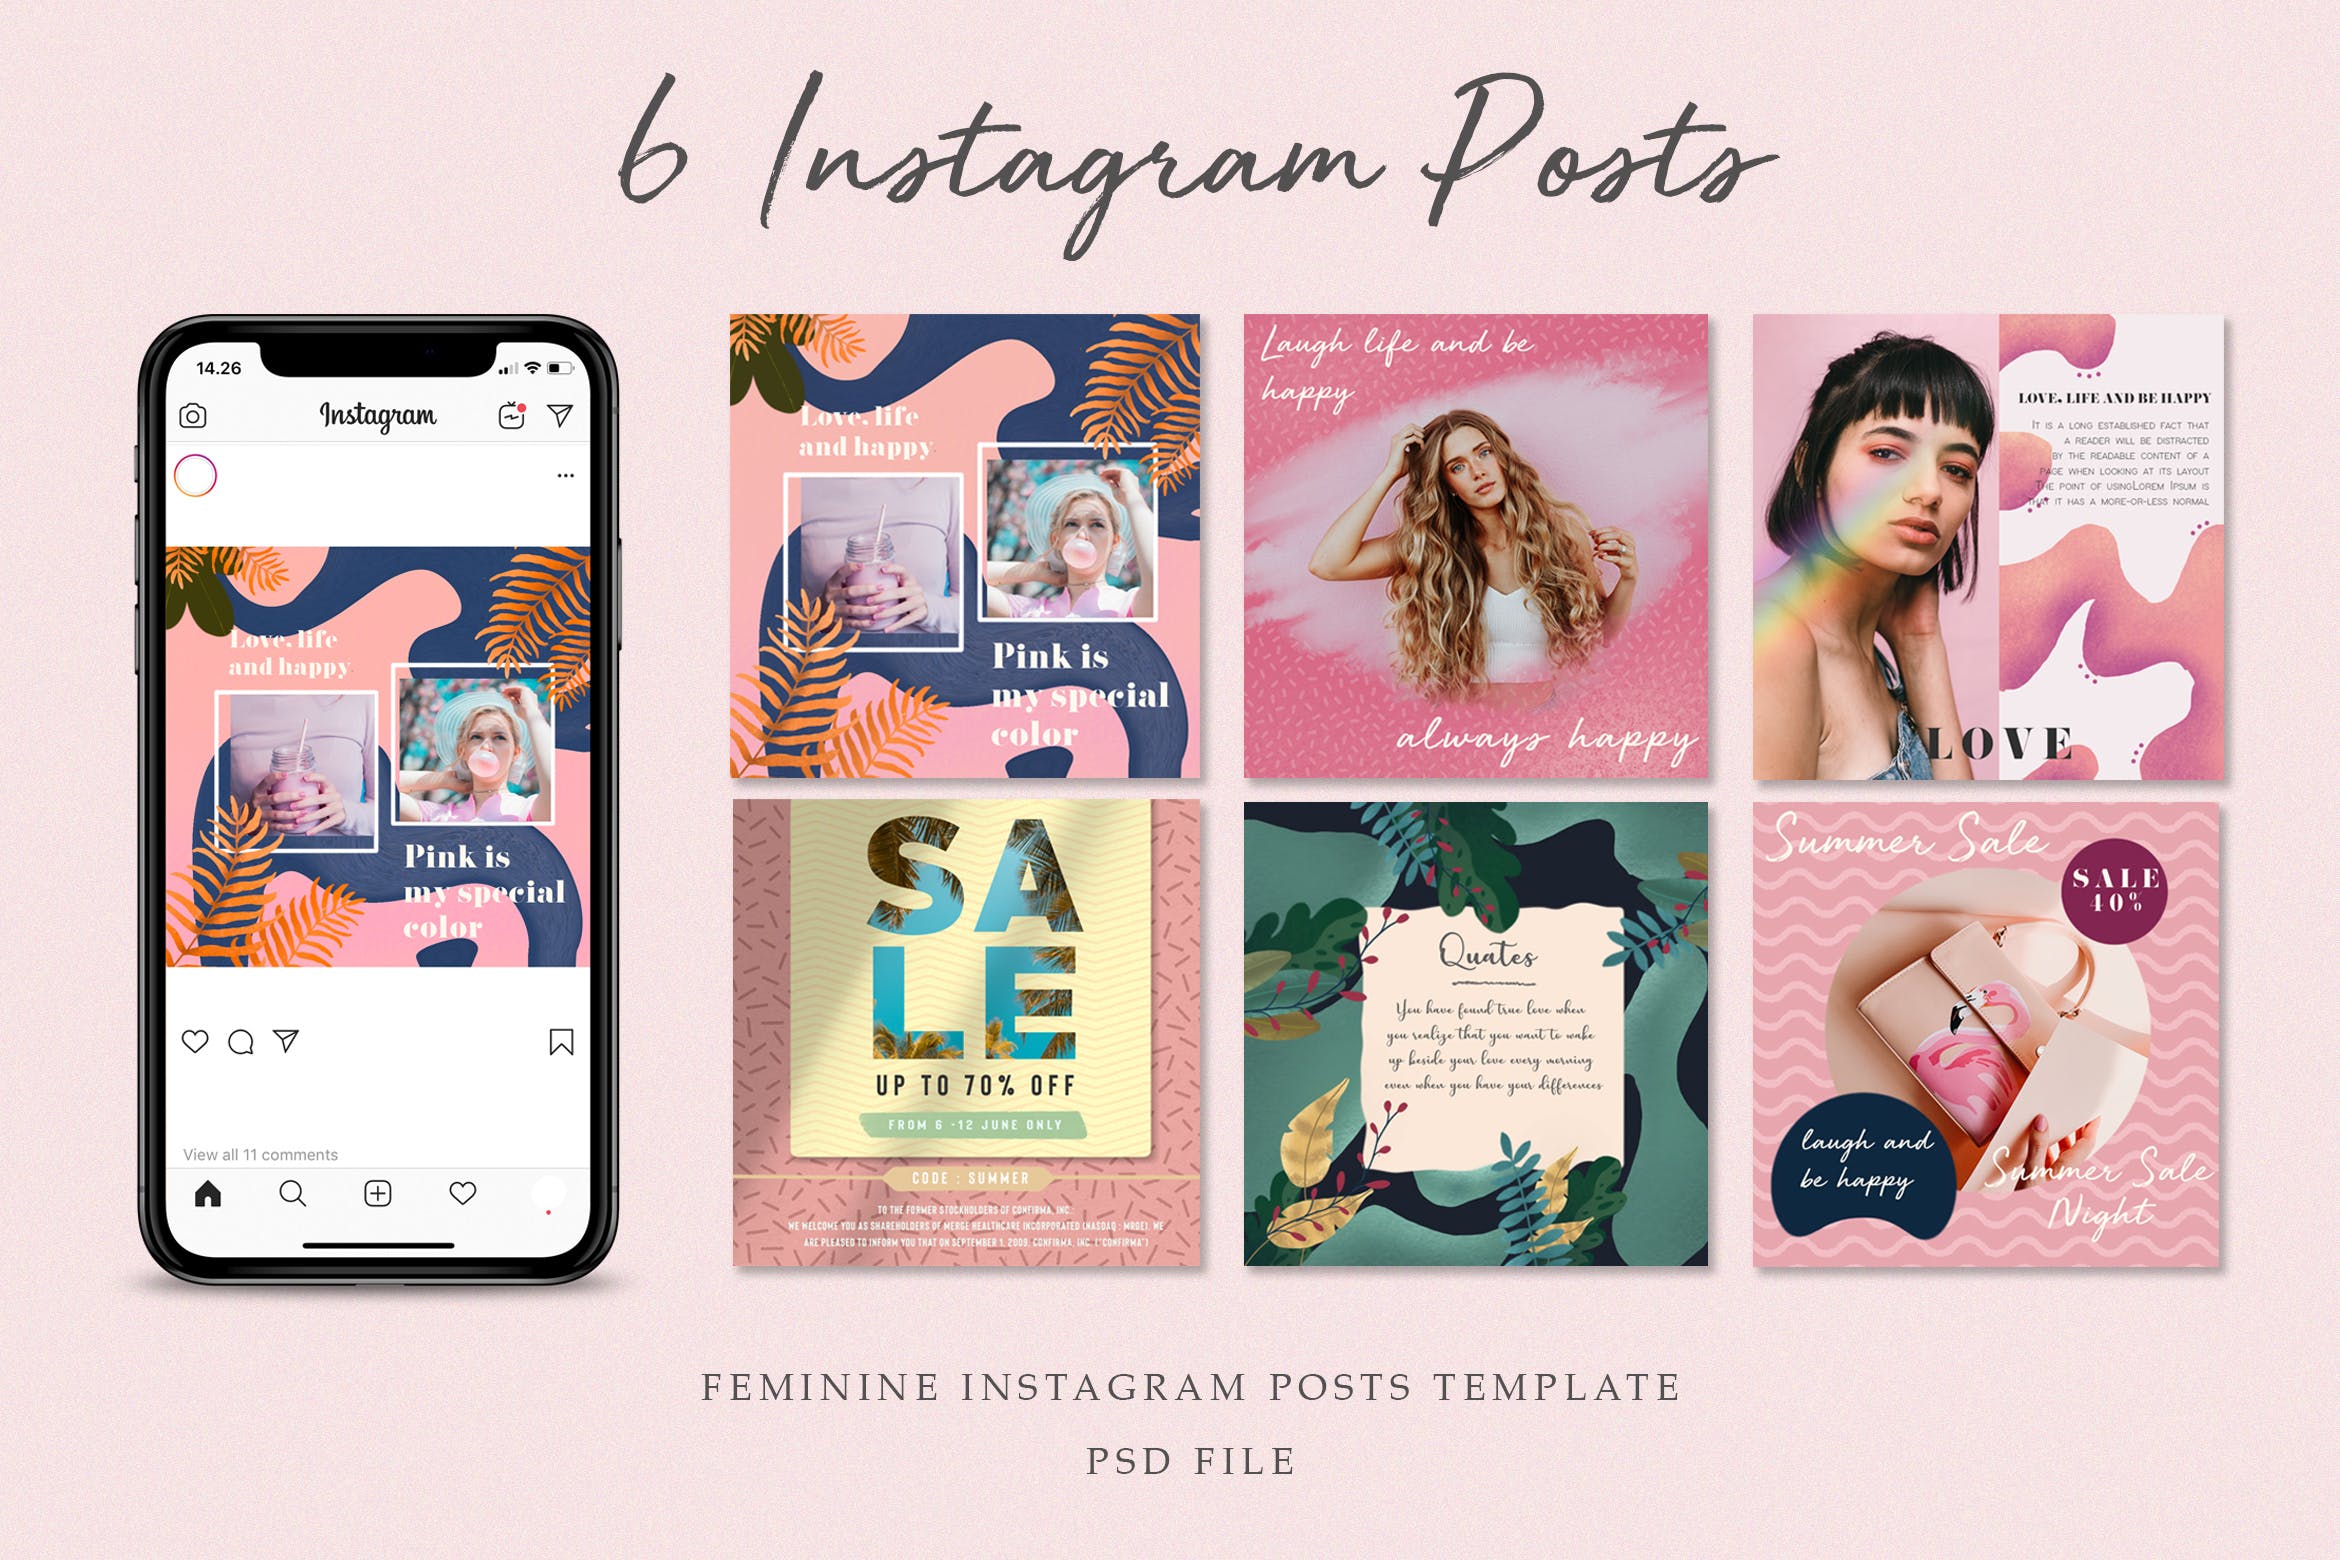 女性服装商店折扣大促销Instagram帖子设计模板 Feminine Instagram Posts设计素材模板